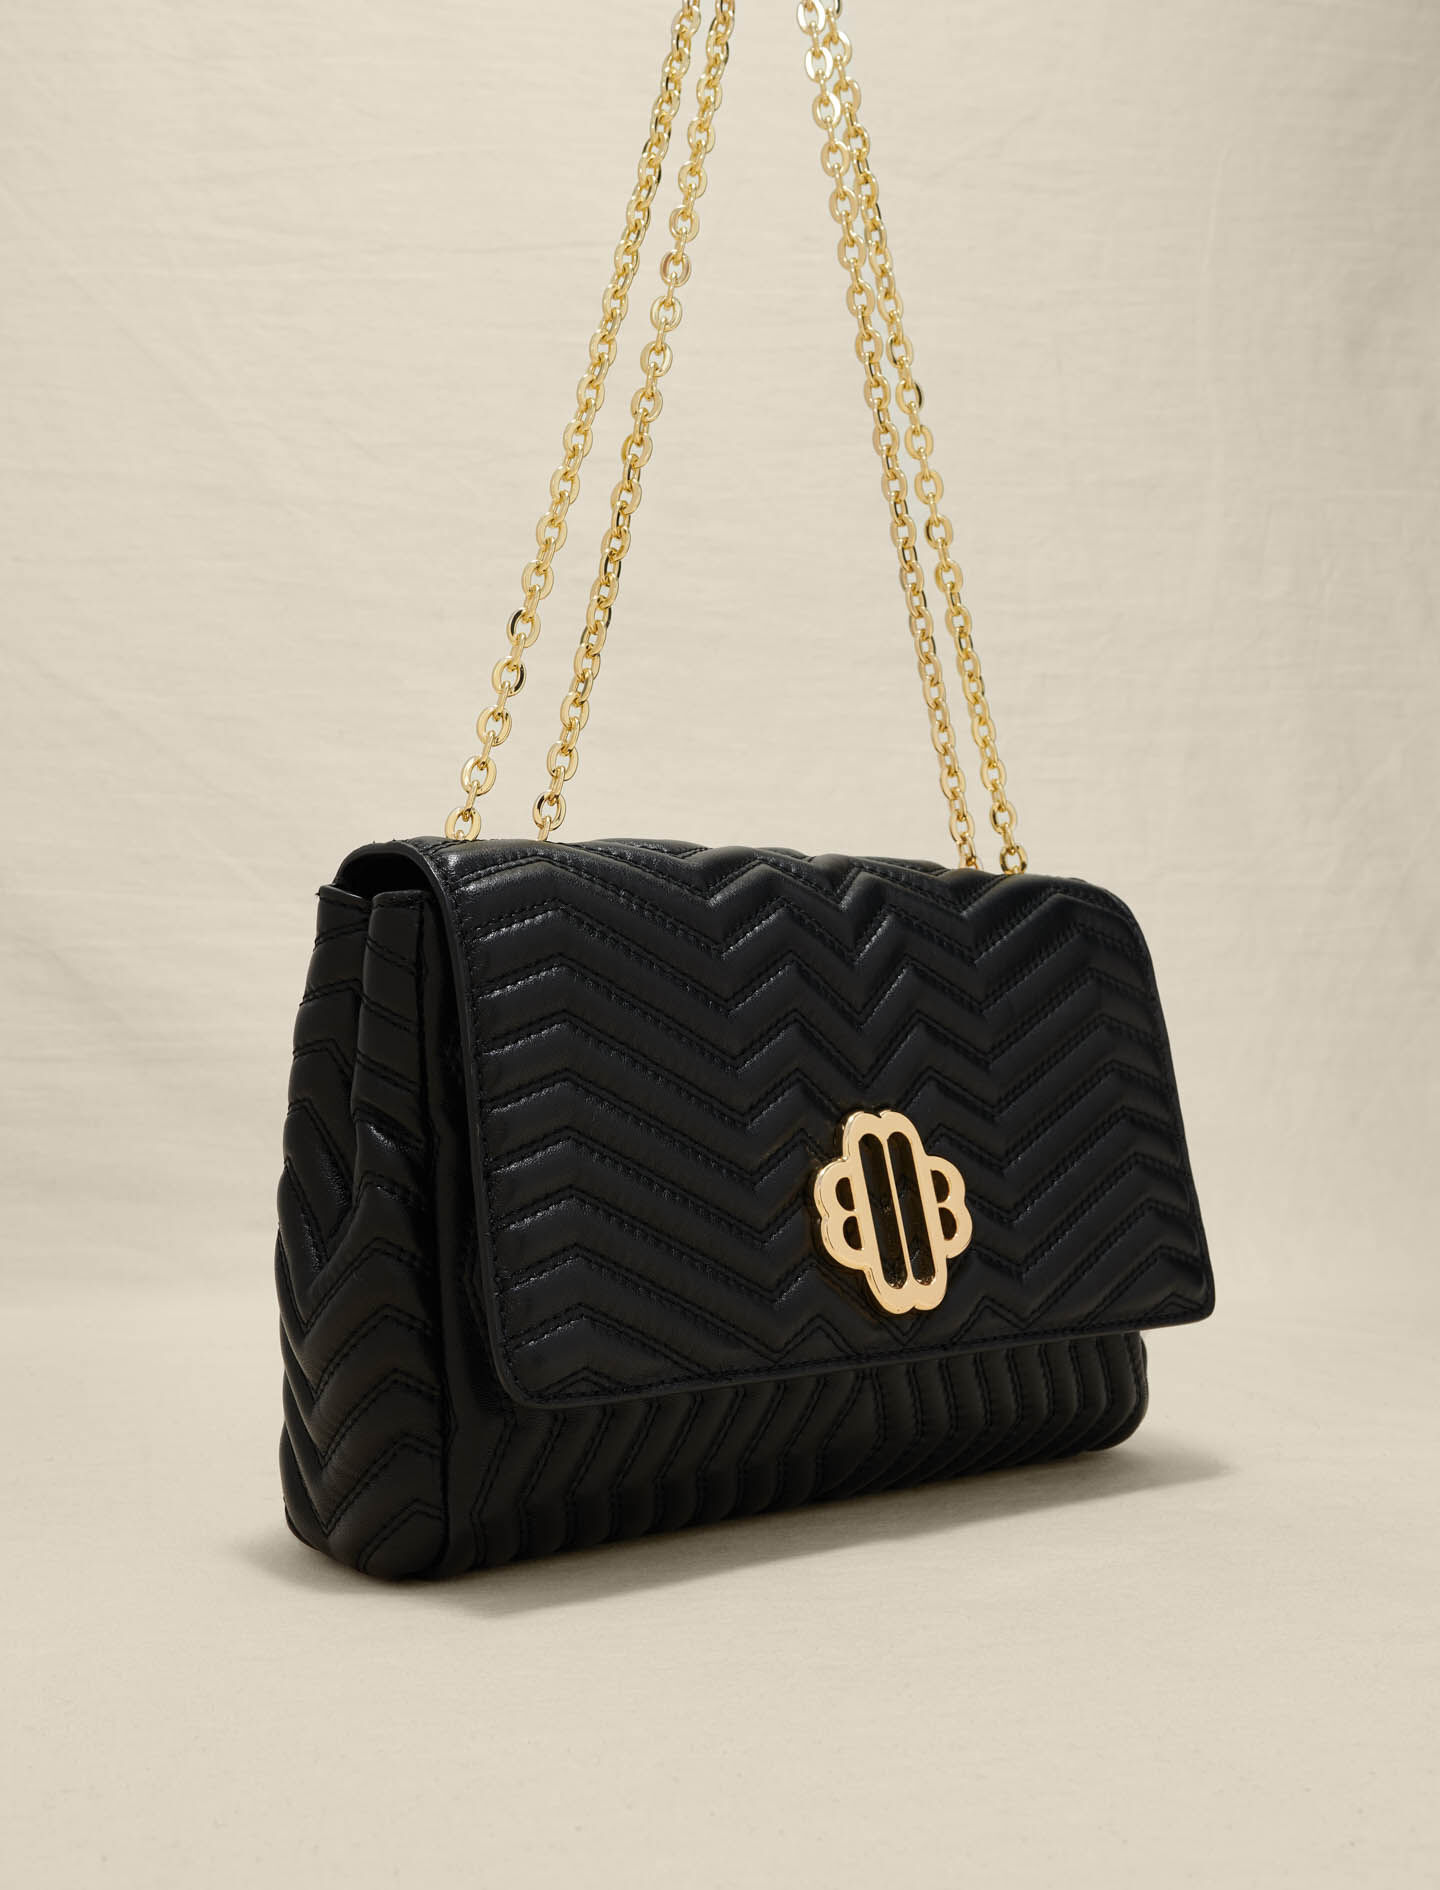 AMARA Bag Crocodile Black/Black Structured Shoulder Bag | Women's Handbags  – Steve Madden